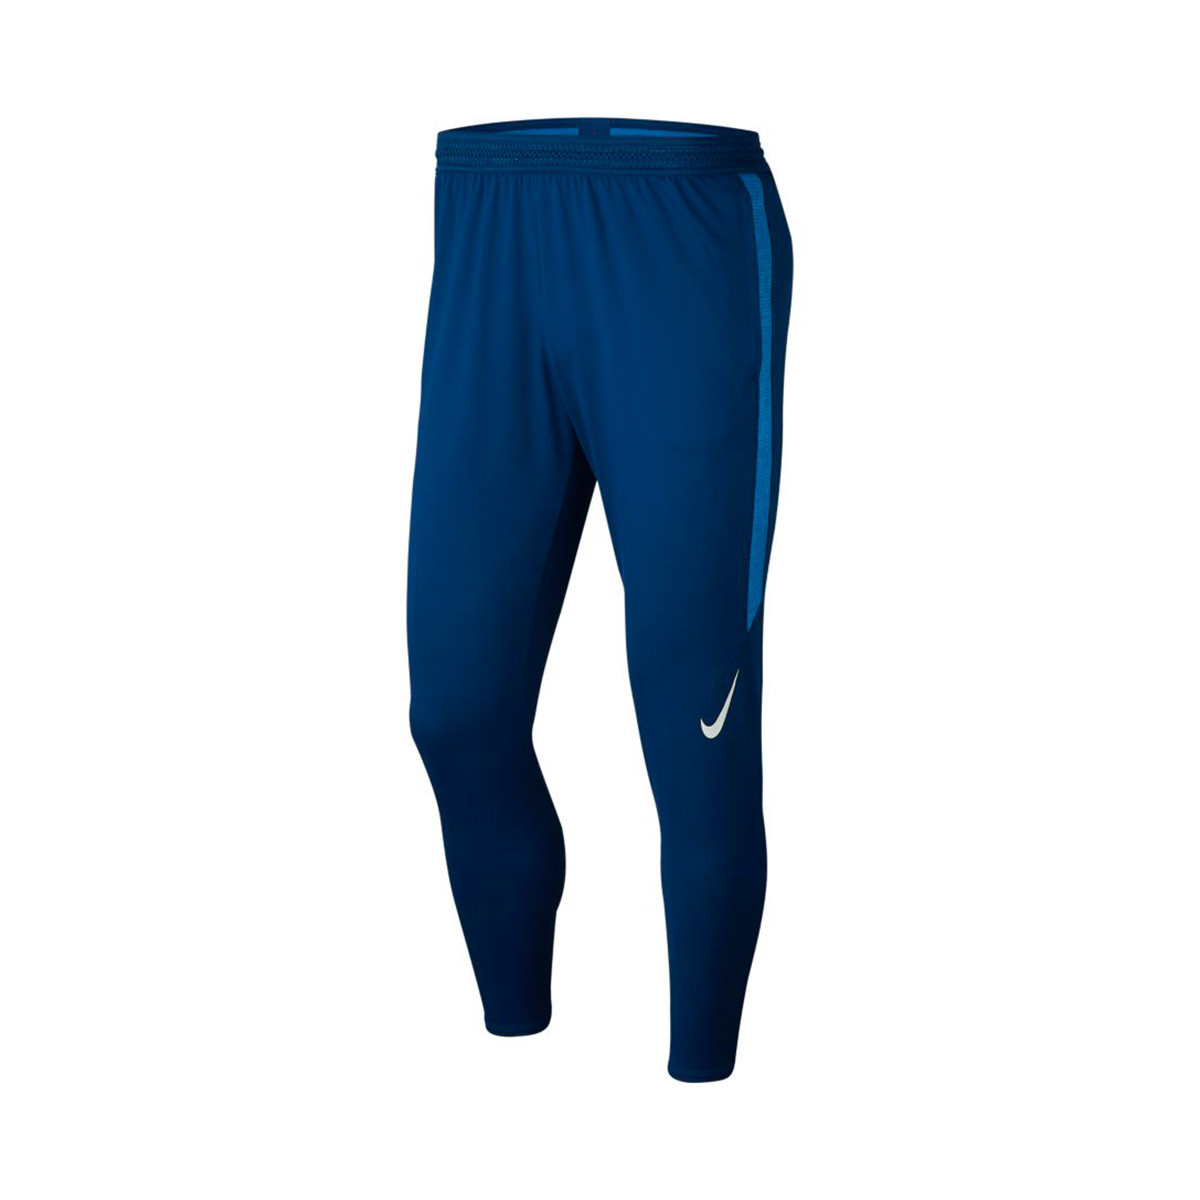 Pantalón largo Nike Dry Strike KPZ Coastal blue-Light photo blue-White -  Tienda de fútbol Fútbol Emotion